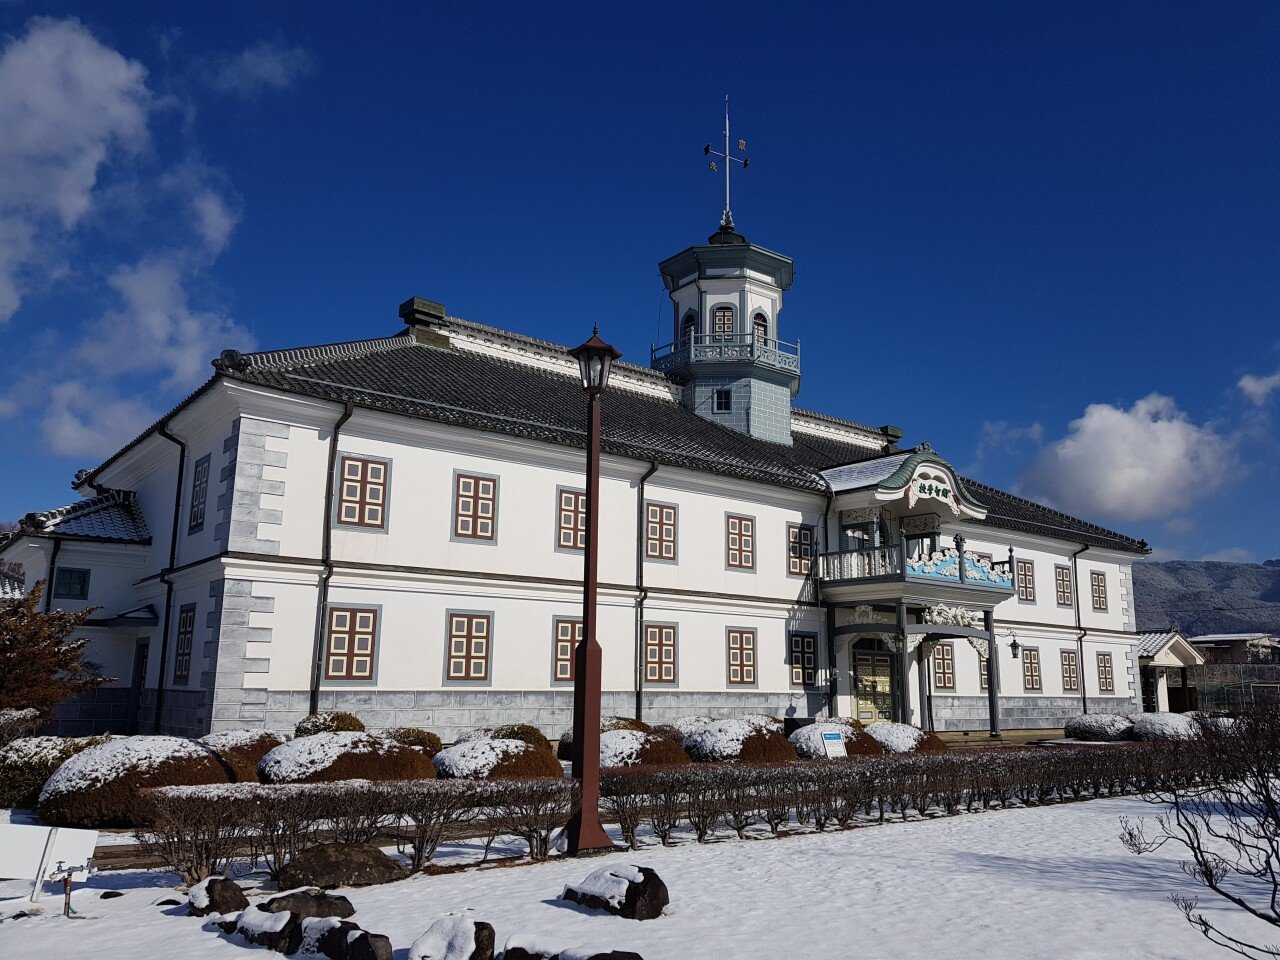 20190201_103415.jpg 눈으로 덮인 겨울 니가타&나가노 여행기(2) (스압?)